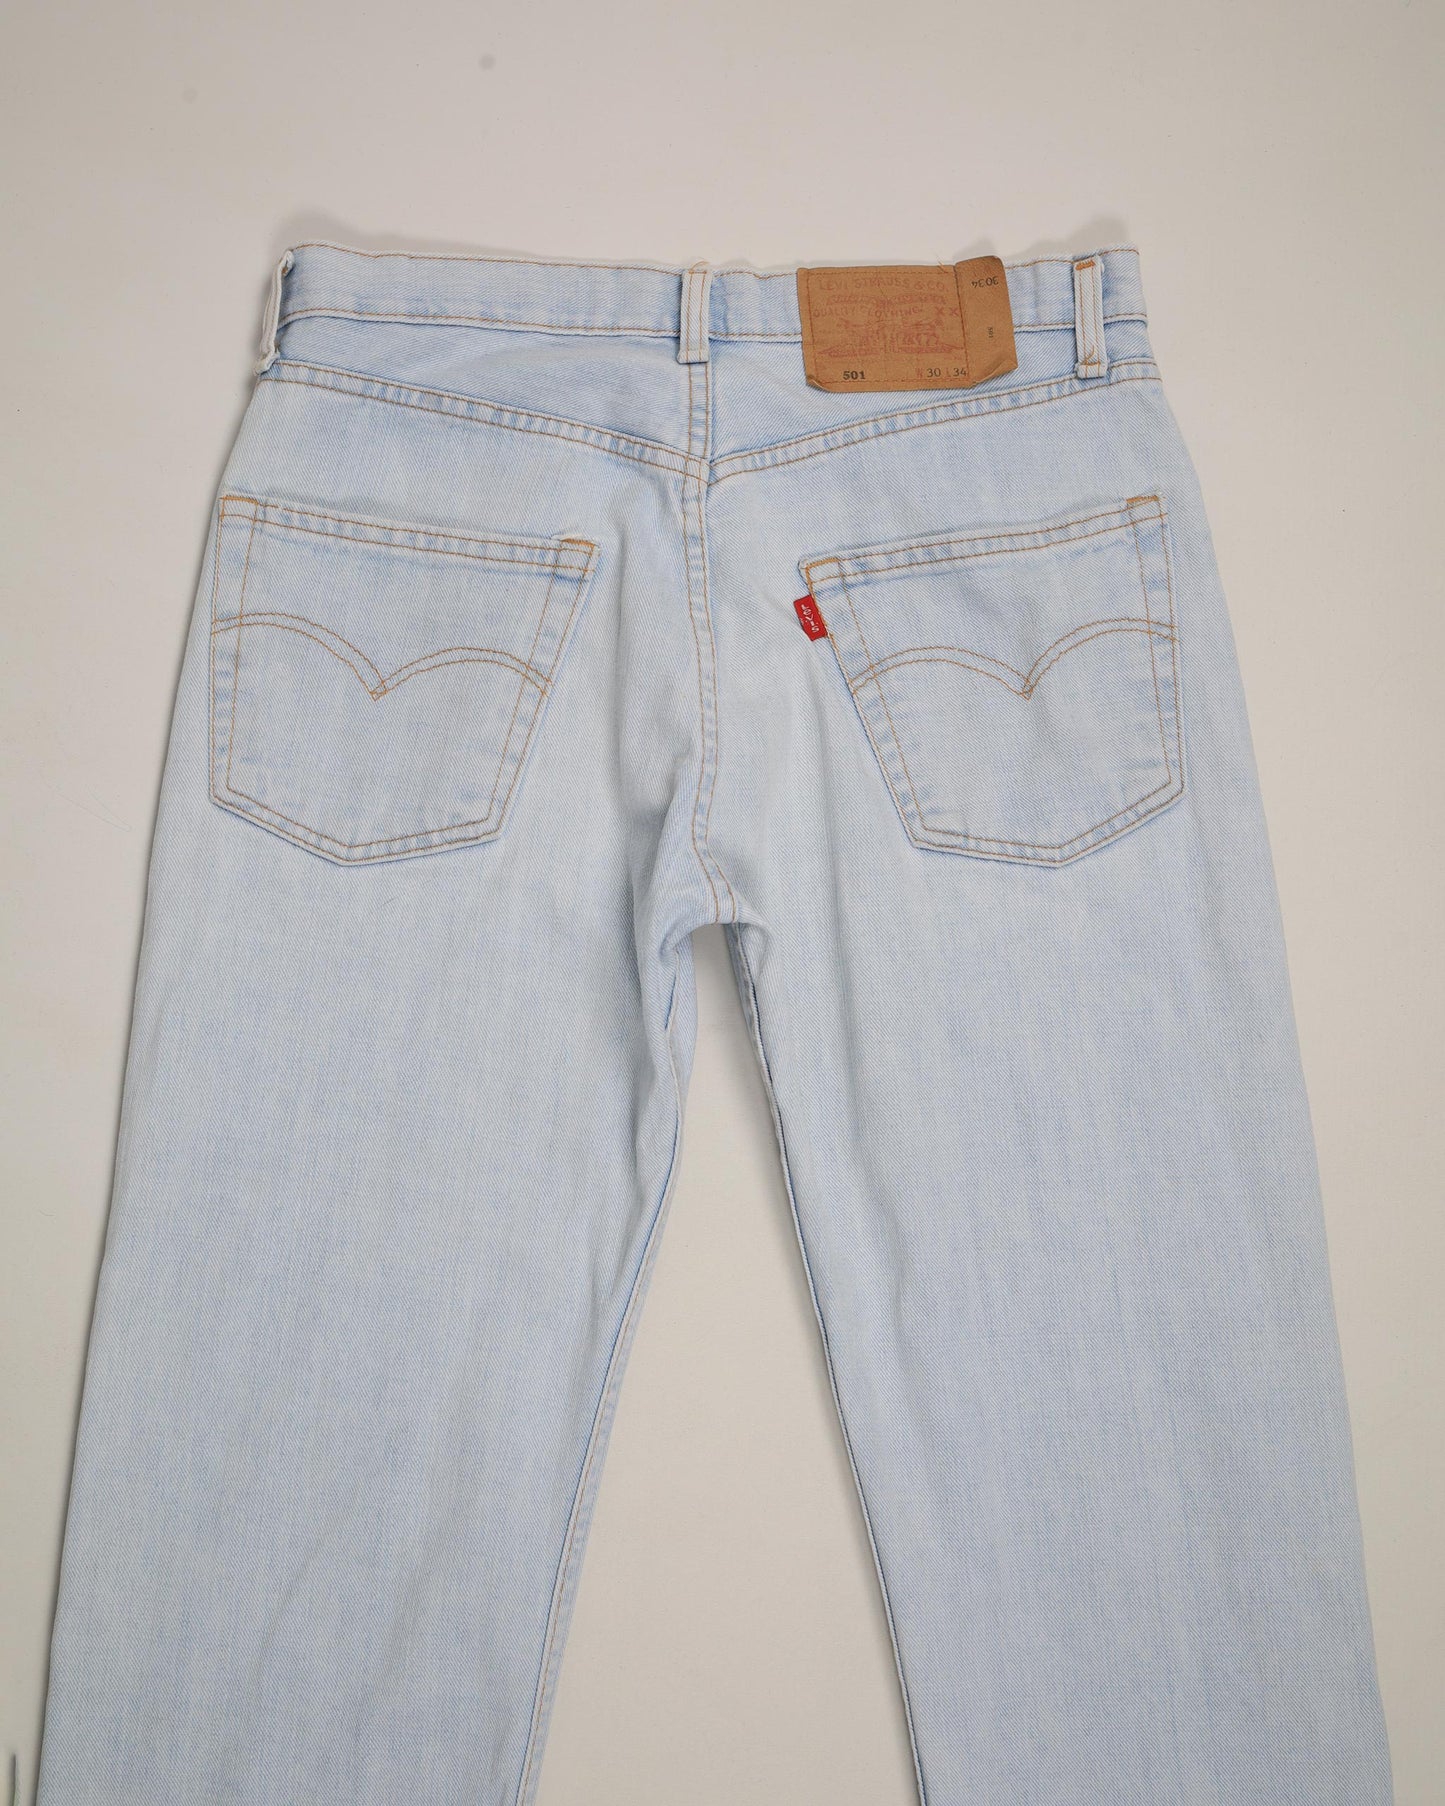 Vintage Levi’s 501 Denim Jeans